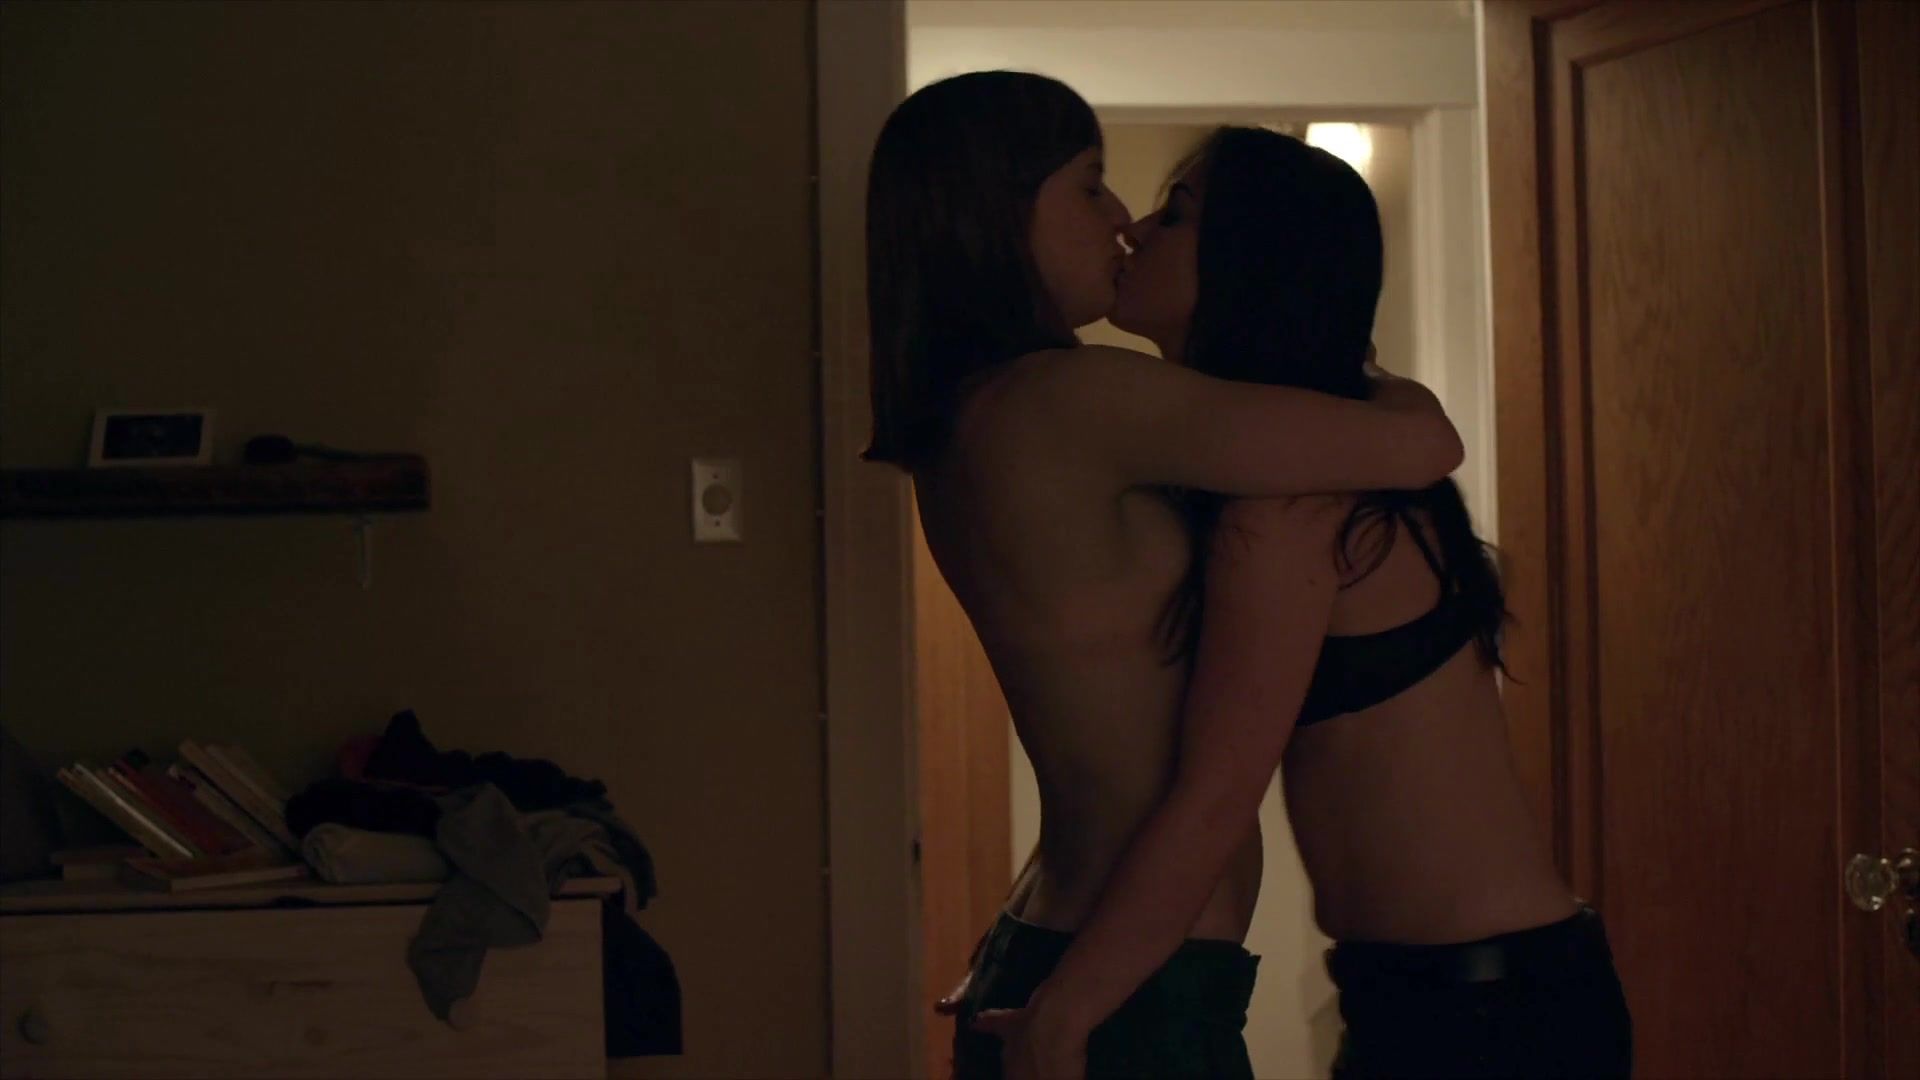 OlderTube Lesbian short scene Alexa-Jeanne Dube, Kimberly Laferriere Nude - Feminin_Feminin s01e05 (2014) Shesafreak - 2